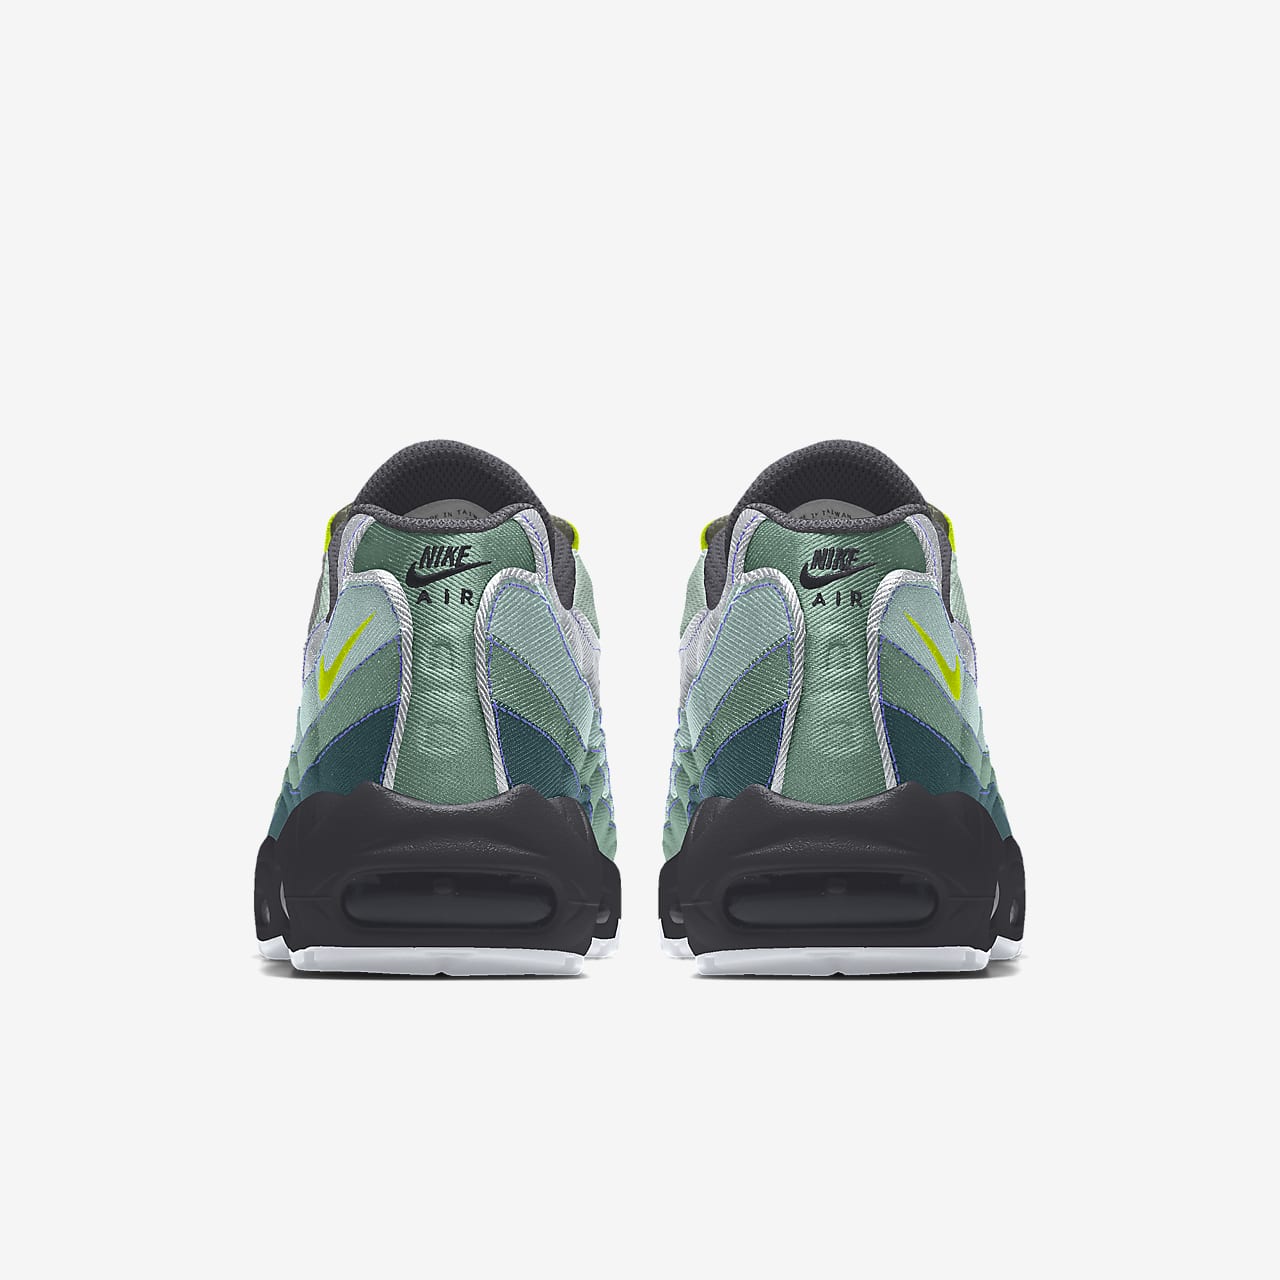 Entretener aire Admisión Nike Air Max 95 By You Zapatillas personalizables - Hombre. Nike ES